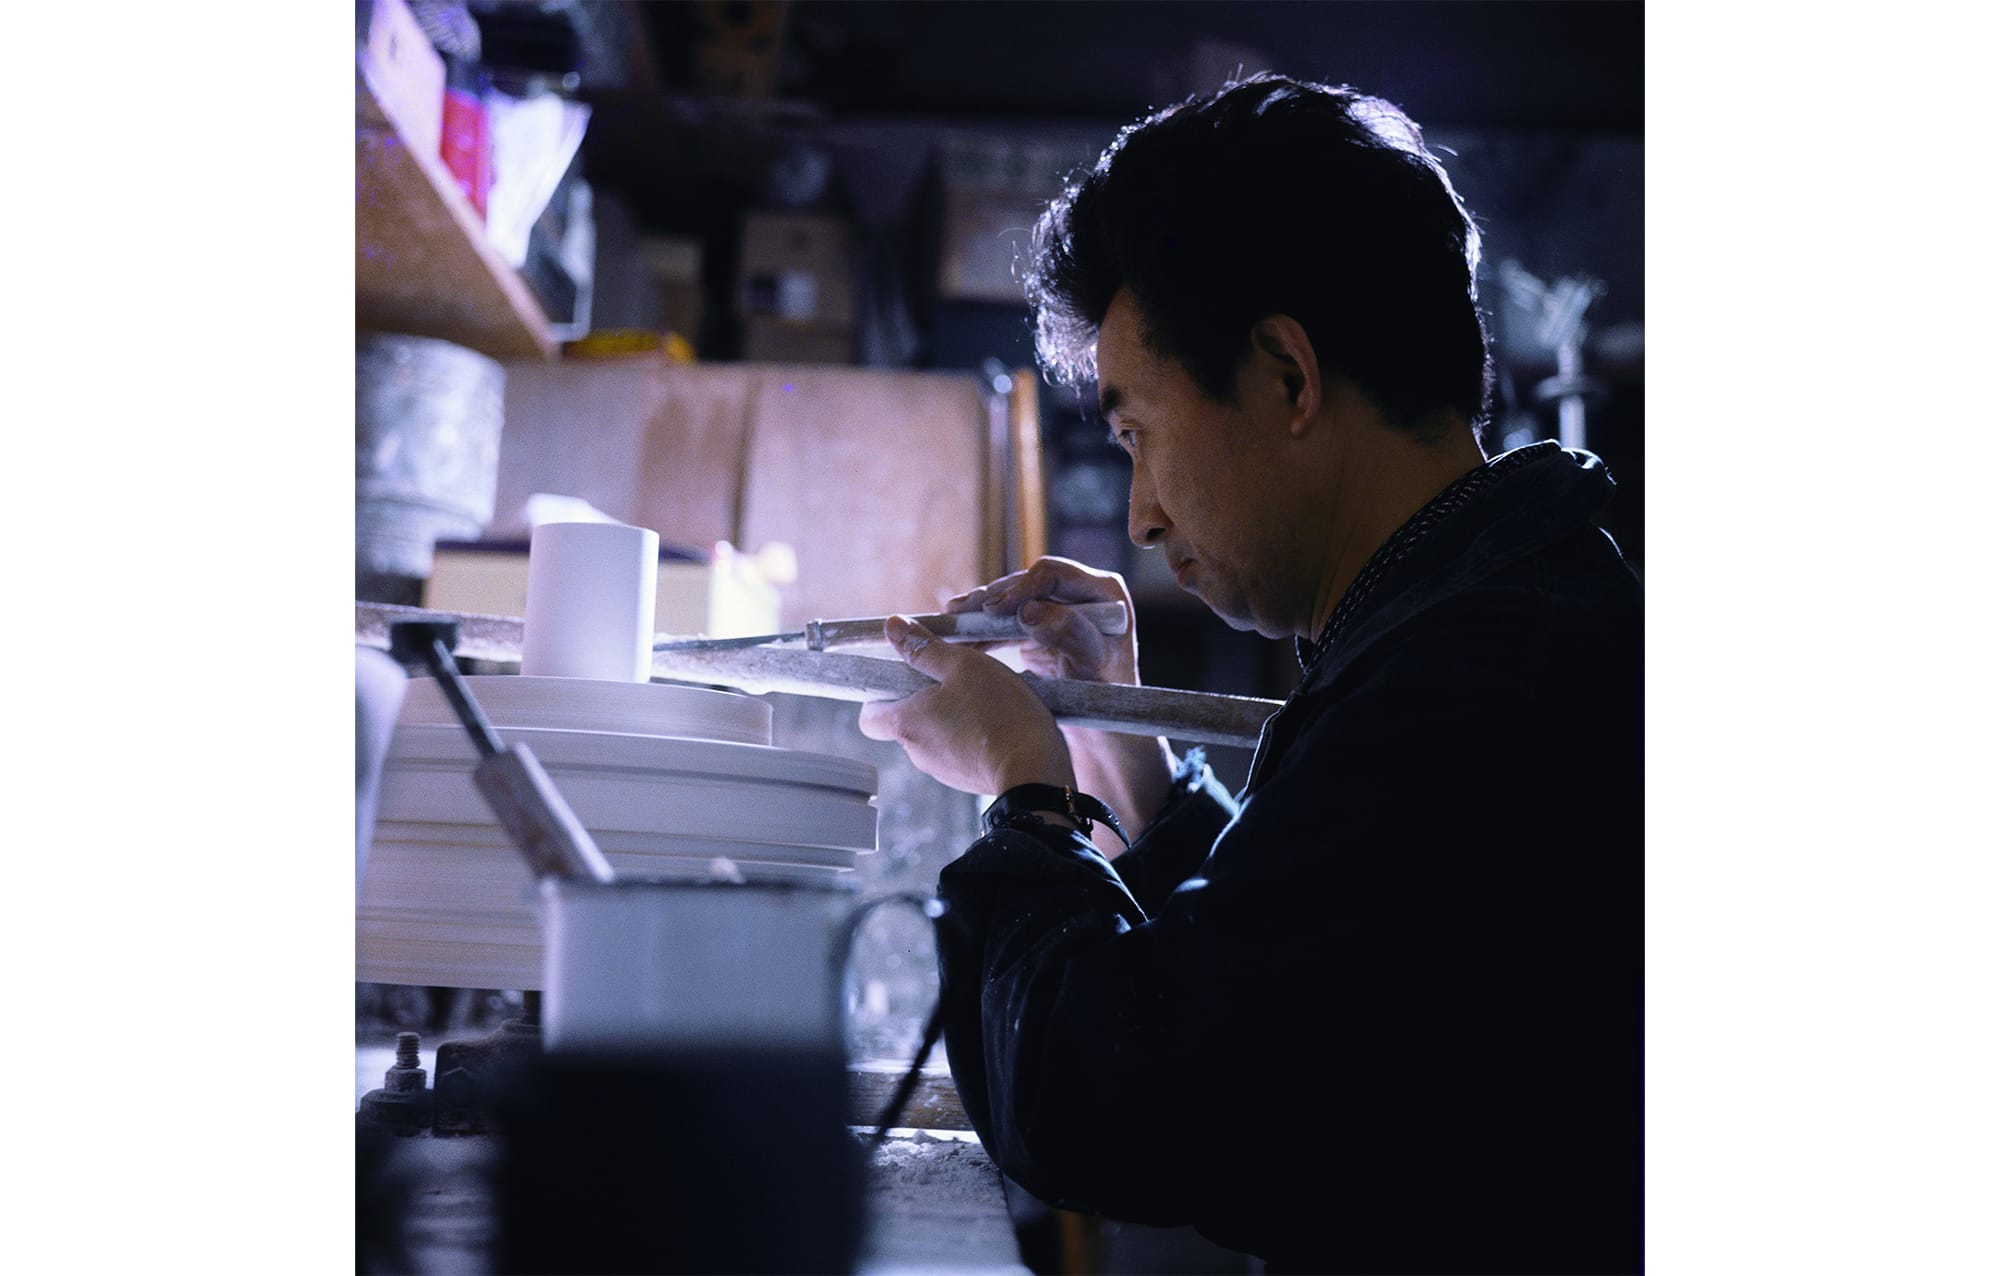 民芸運動の創始者・柳宗悦を父に持つ、戦後日本を代表するプロダクトデザイナー、柳宗理。柳工業デザイン研究所を設立し、日本におけるプロダクトデザインの発展に寄与した。「石膏ロクロで作業する柳宗理 @YANAGI DESIGN OFFICE」